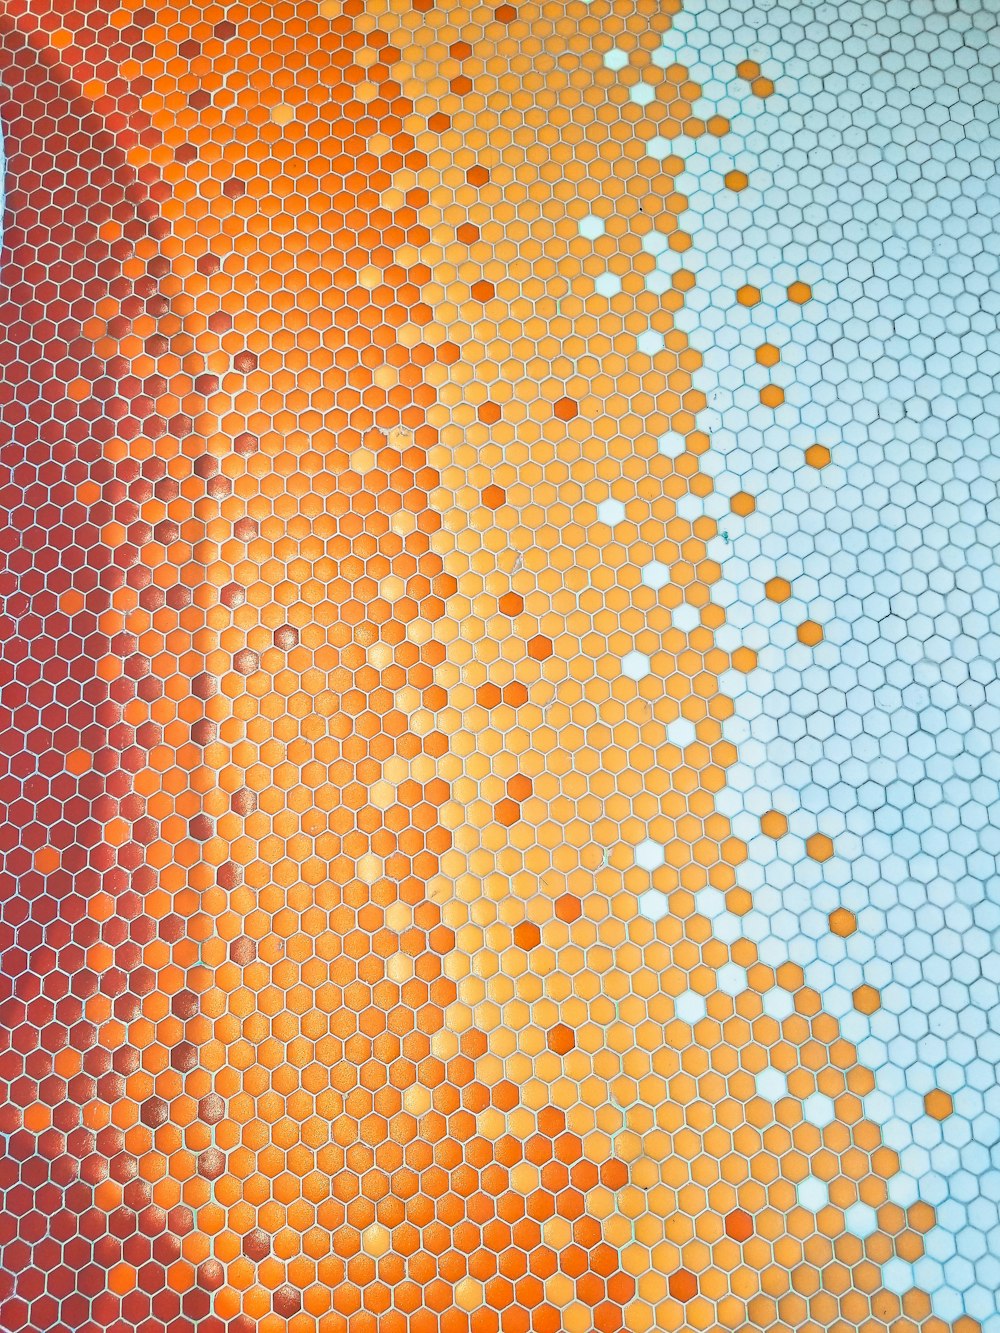 오렌지와 화이트 물방울 무늬 직물